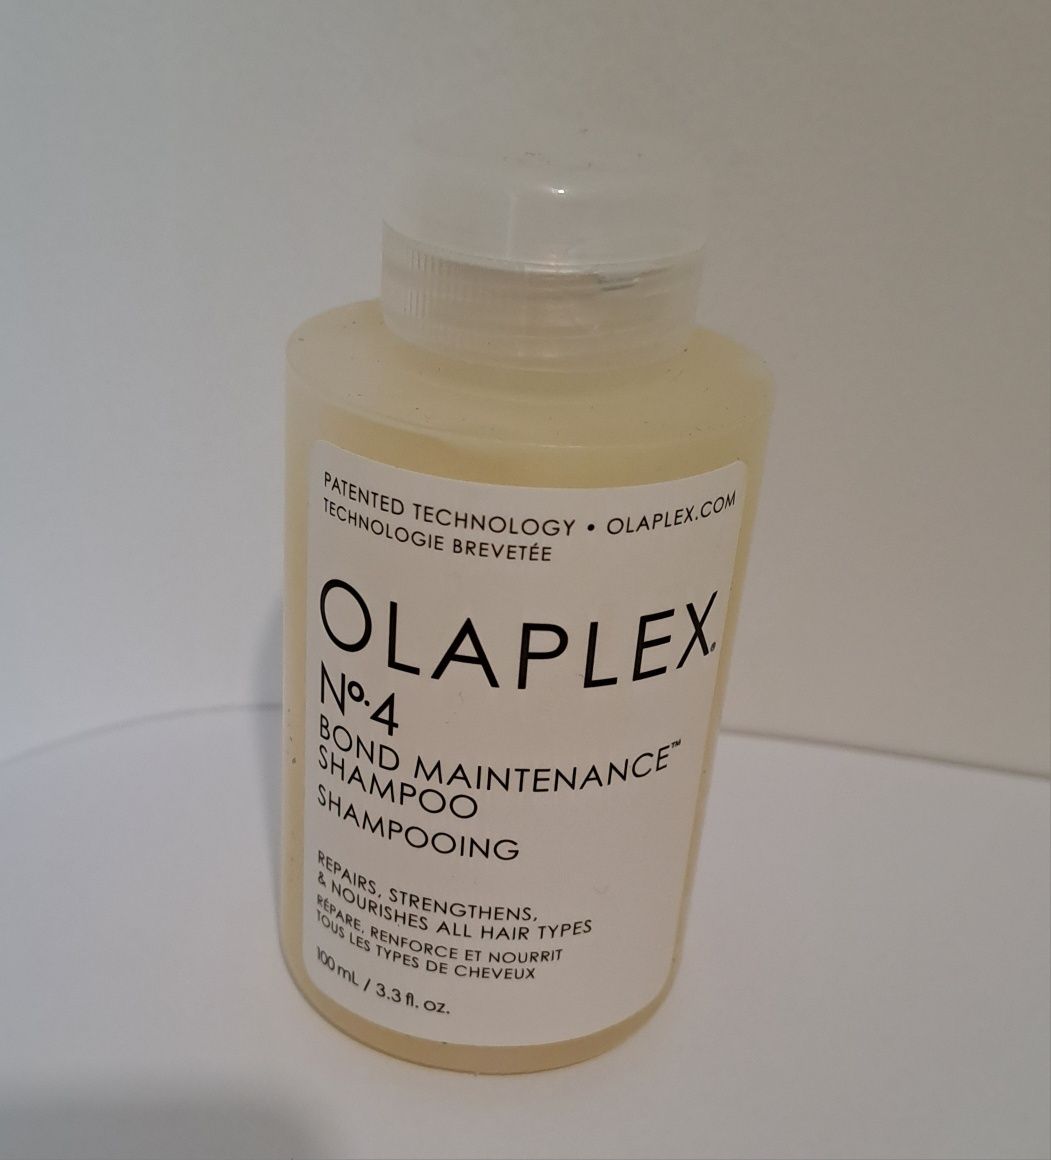 Olaplex szampon 100ml no 4 bond Maintenance